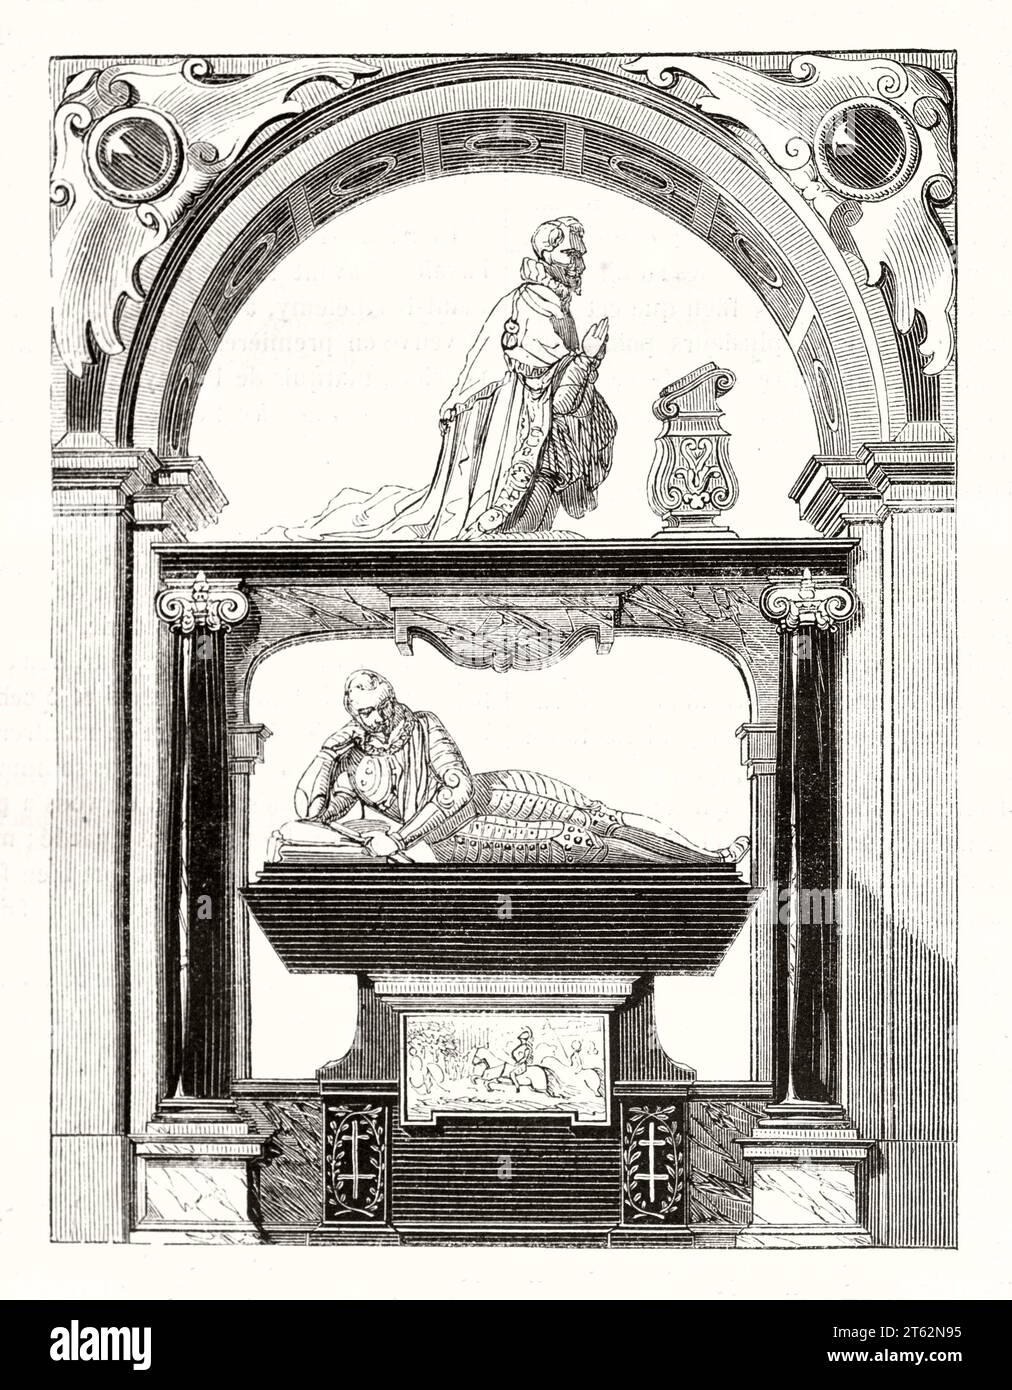 Vecchia illustrazione del cenotafio Enrico i di Guisa nella cappella del collegio dell'Unione europea, in Francia. Da autore non identificato, publ. Su Magasin Pittoresque, Parigi, 1849 Foto Stock